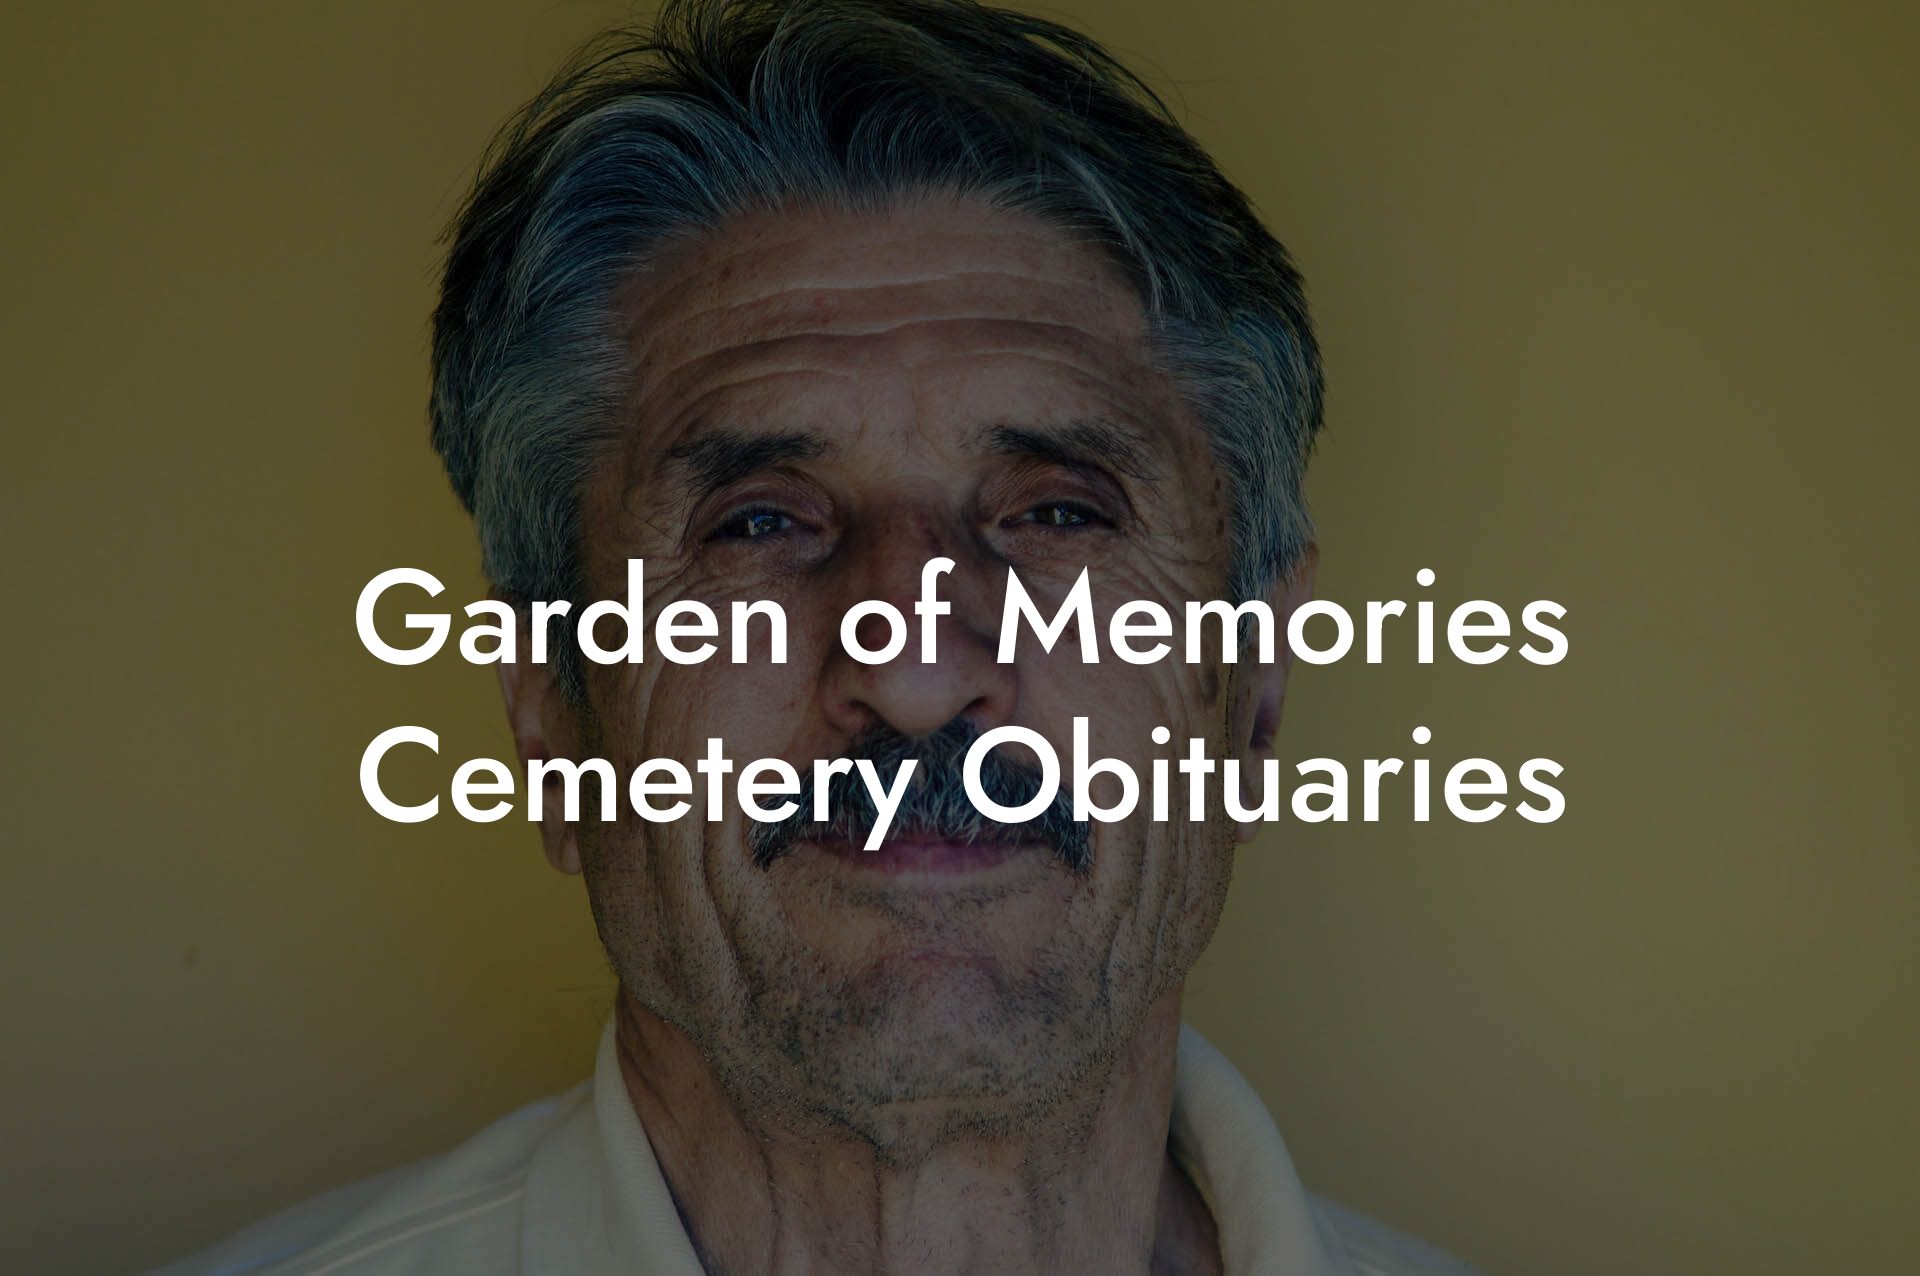 Garden of Memories Cemetery Obituaries